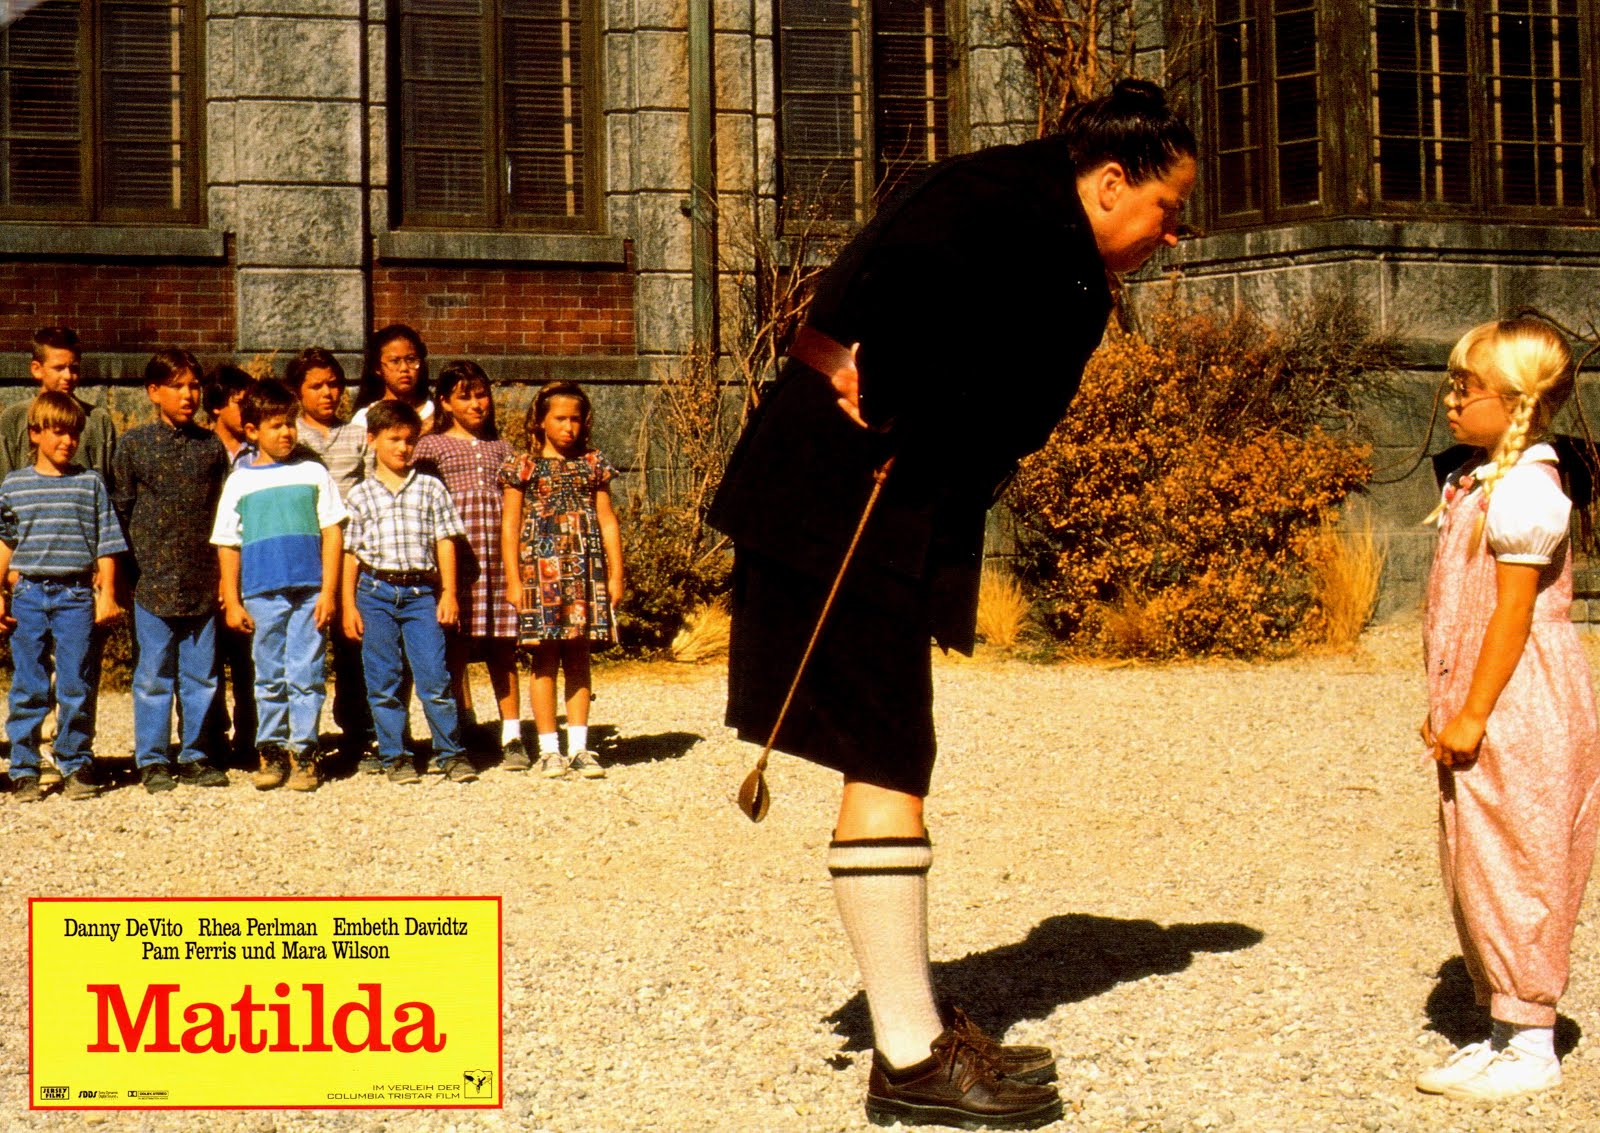 Matilda (1996) Danny DeVito - Matilda